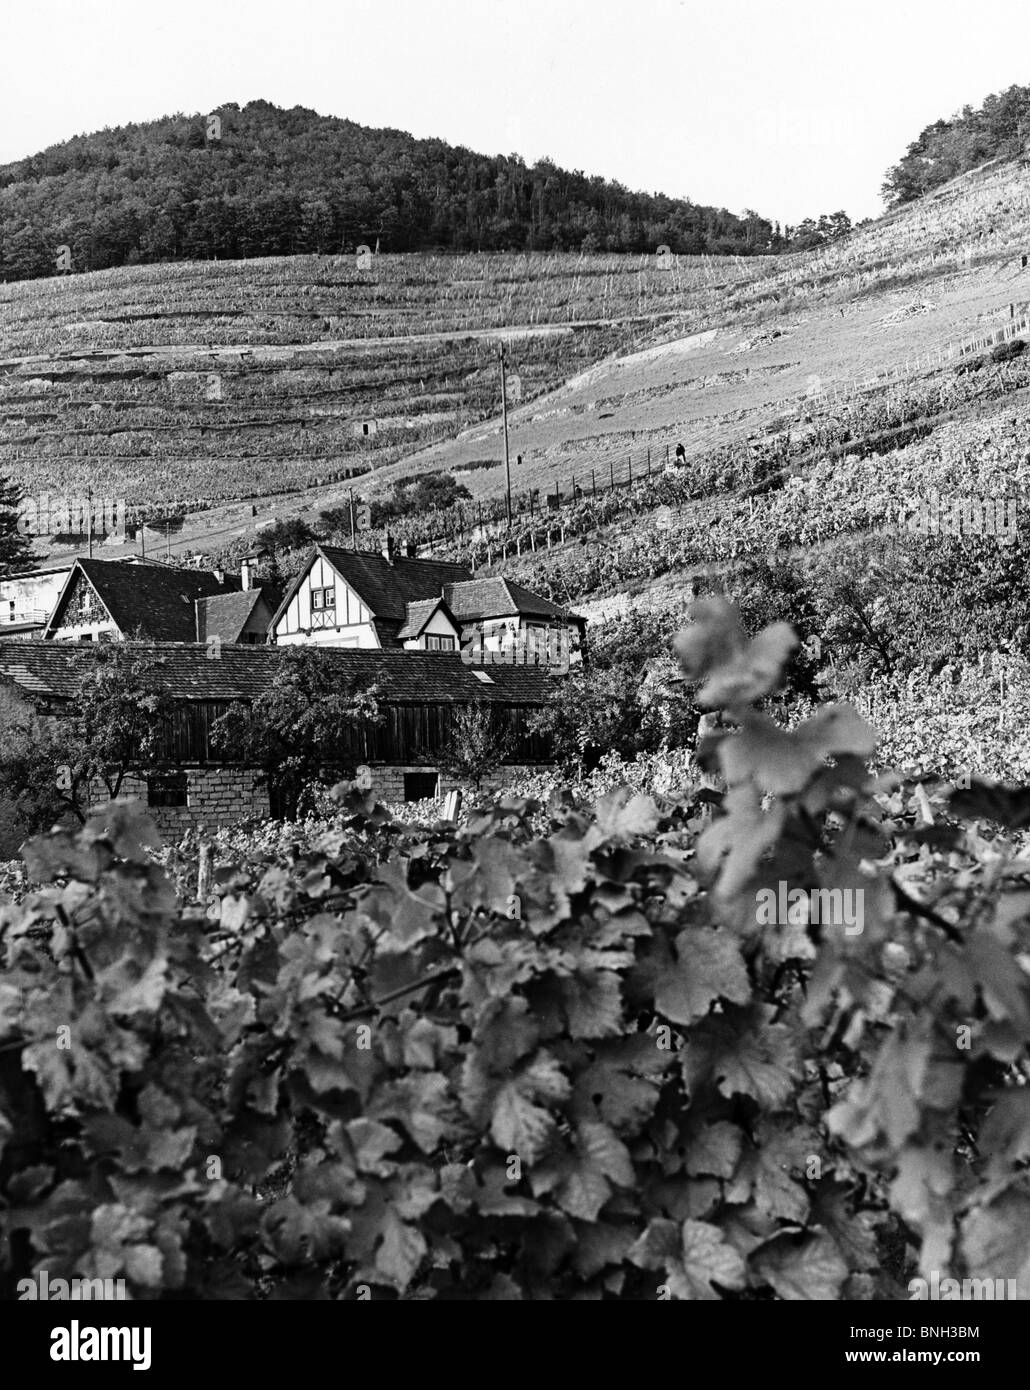 Bâtiments dans un vignoble, Alsace, France Banque D'Images